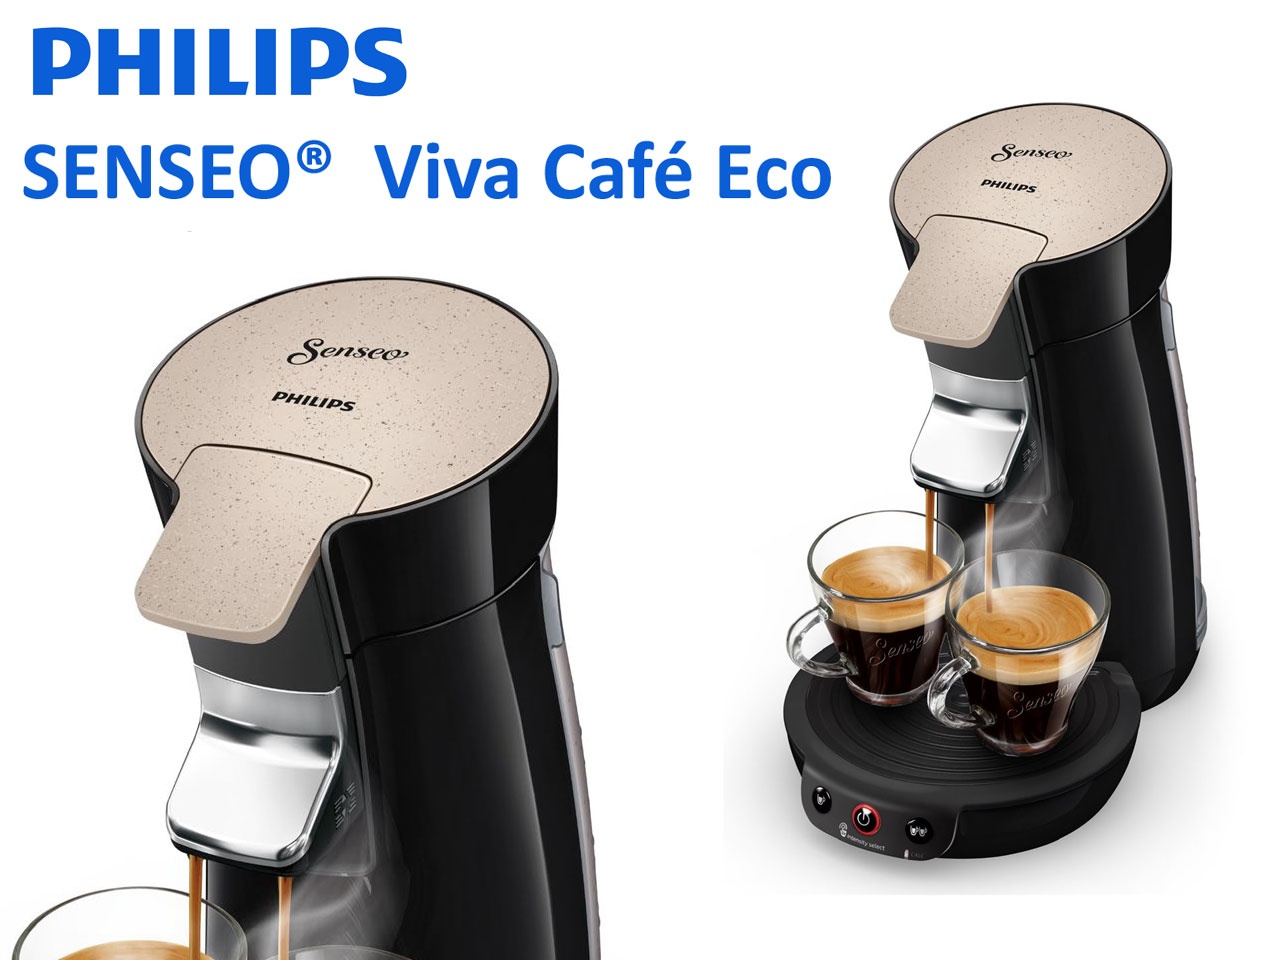 PHILIPS présente SENSEO Viva Café Eco, une machine à café à dosettes plus  respectueuse de l'environnement - Univers Habitat